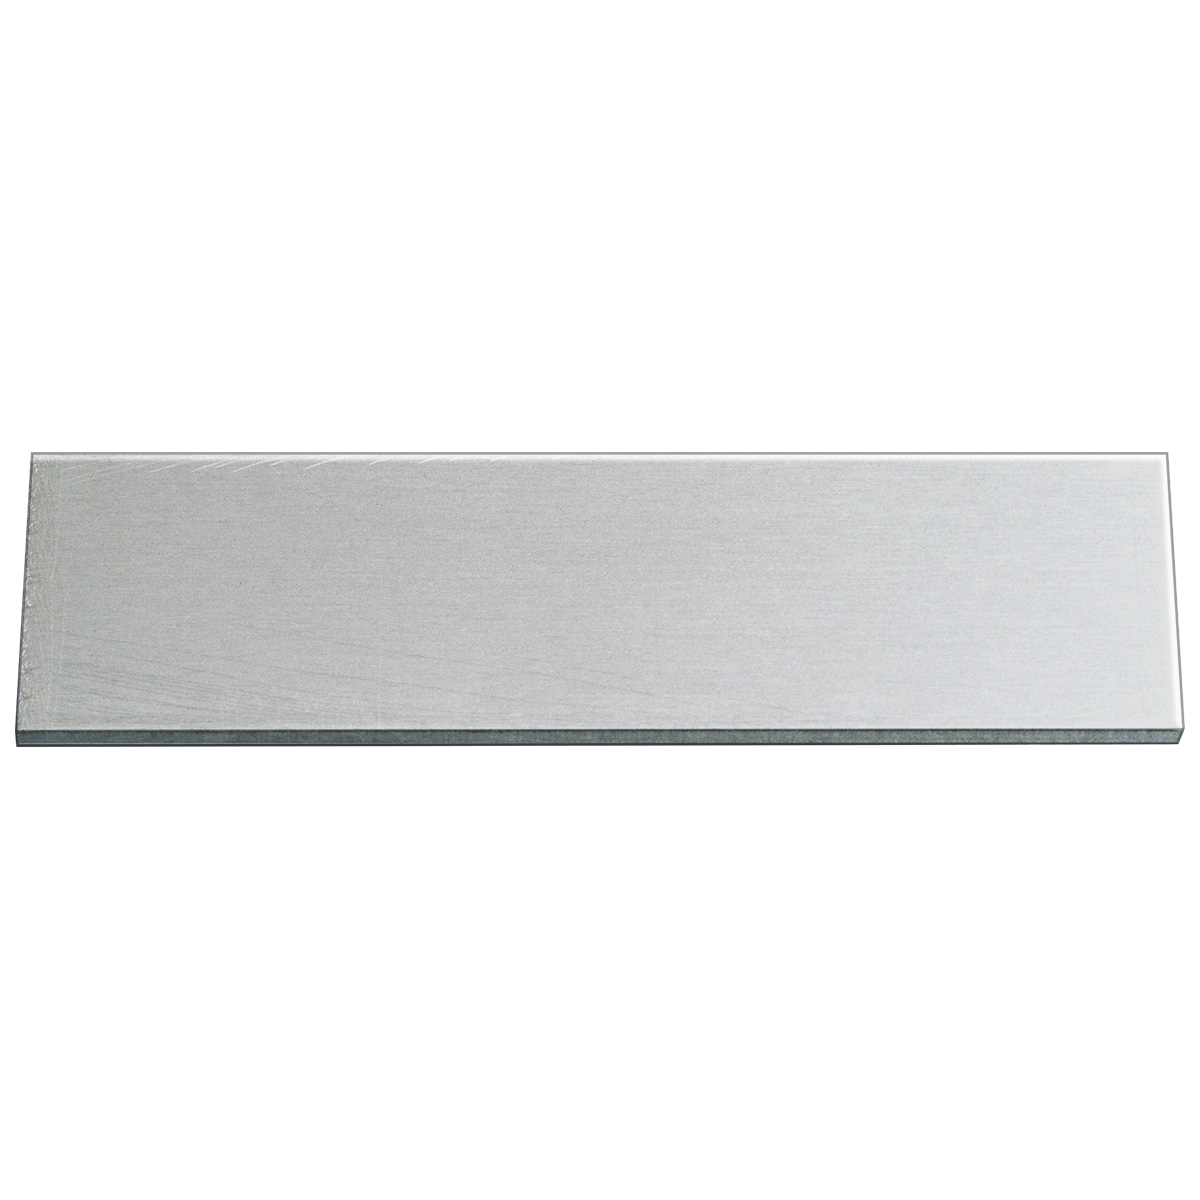 Plaque pour la gravure, aluminium rectangulaire 50 x 15 mm, épaisseur 1 mm, avec colle, sans forage